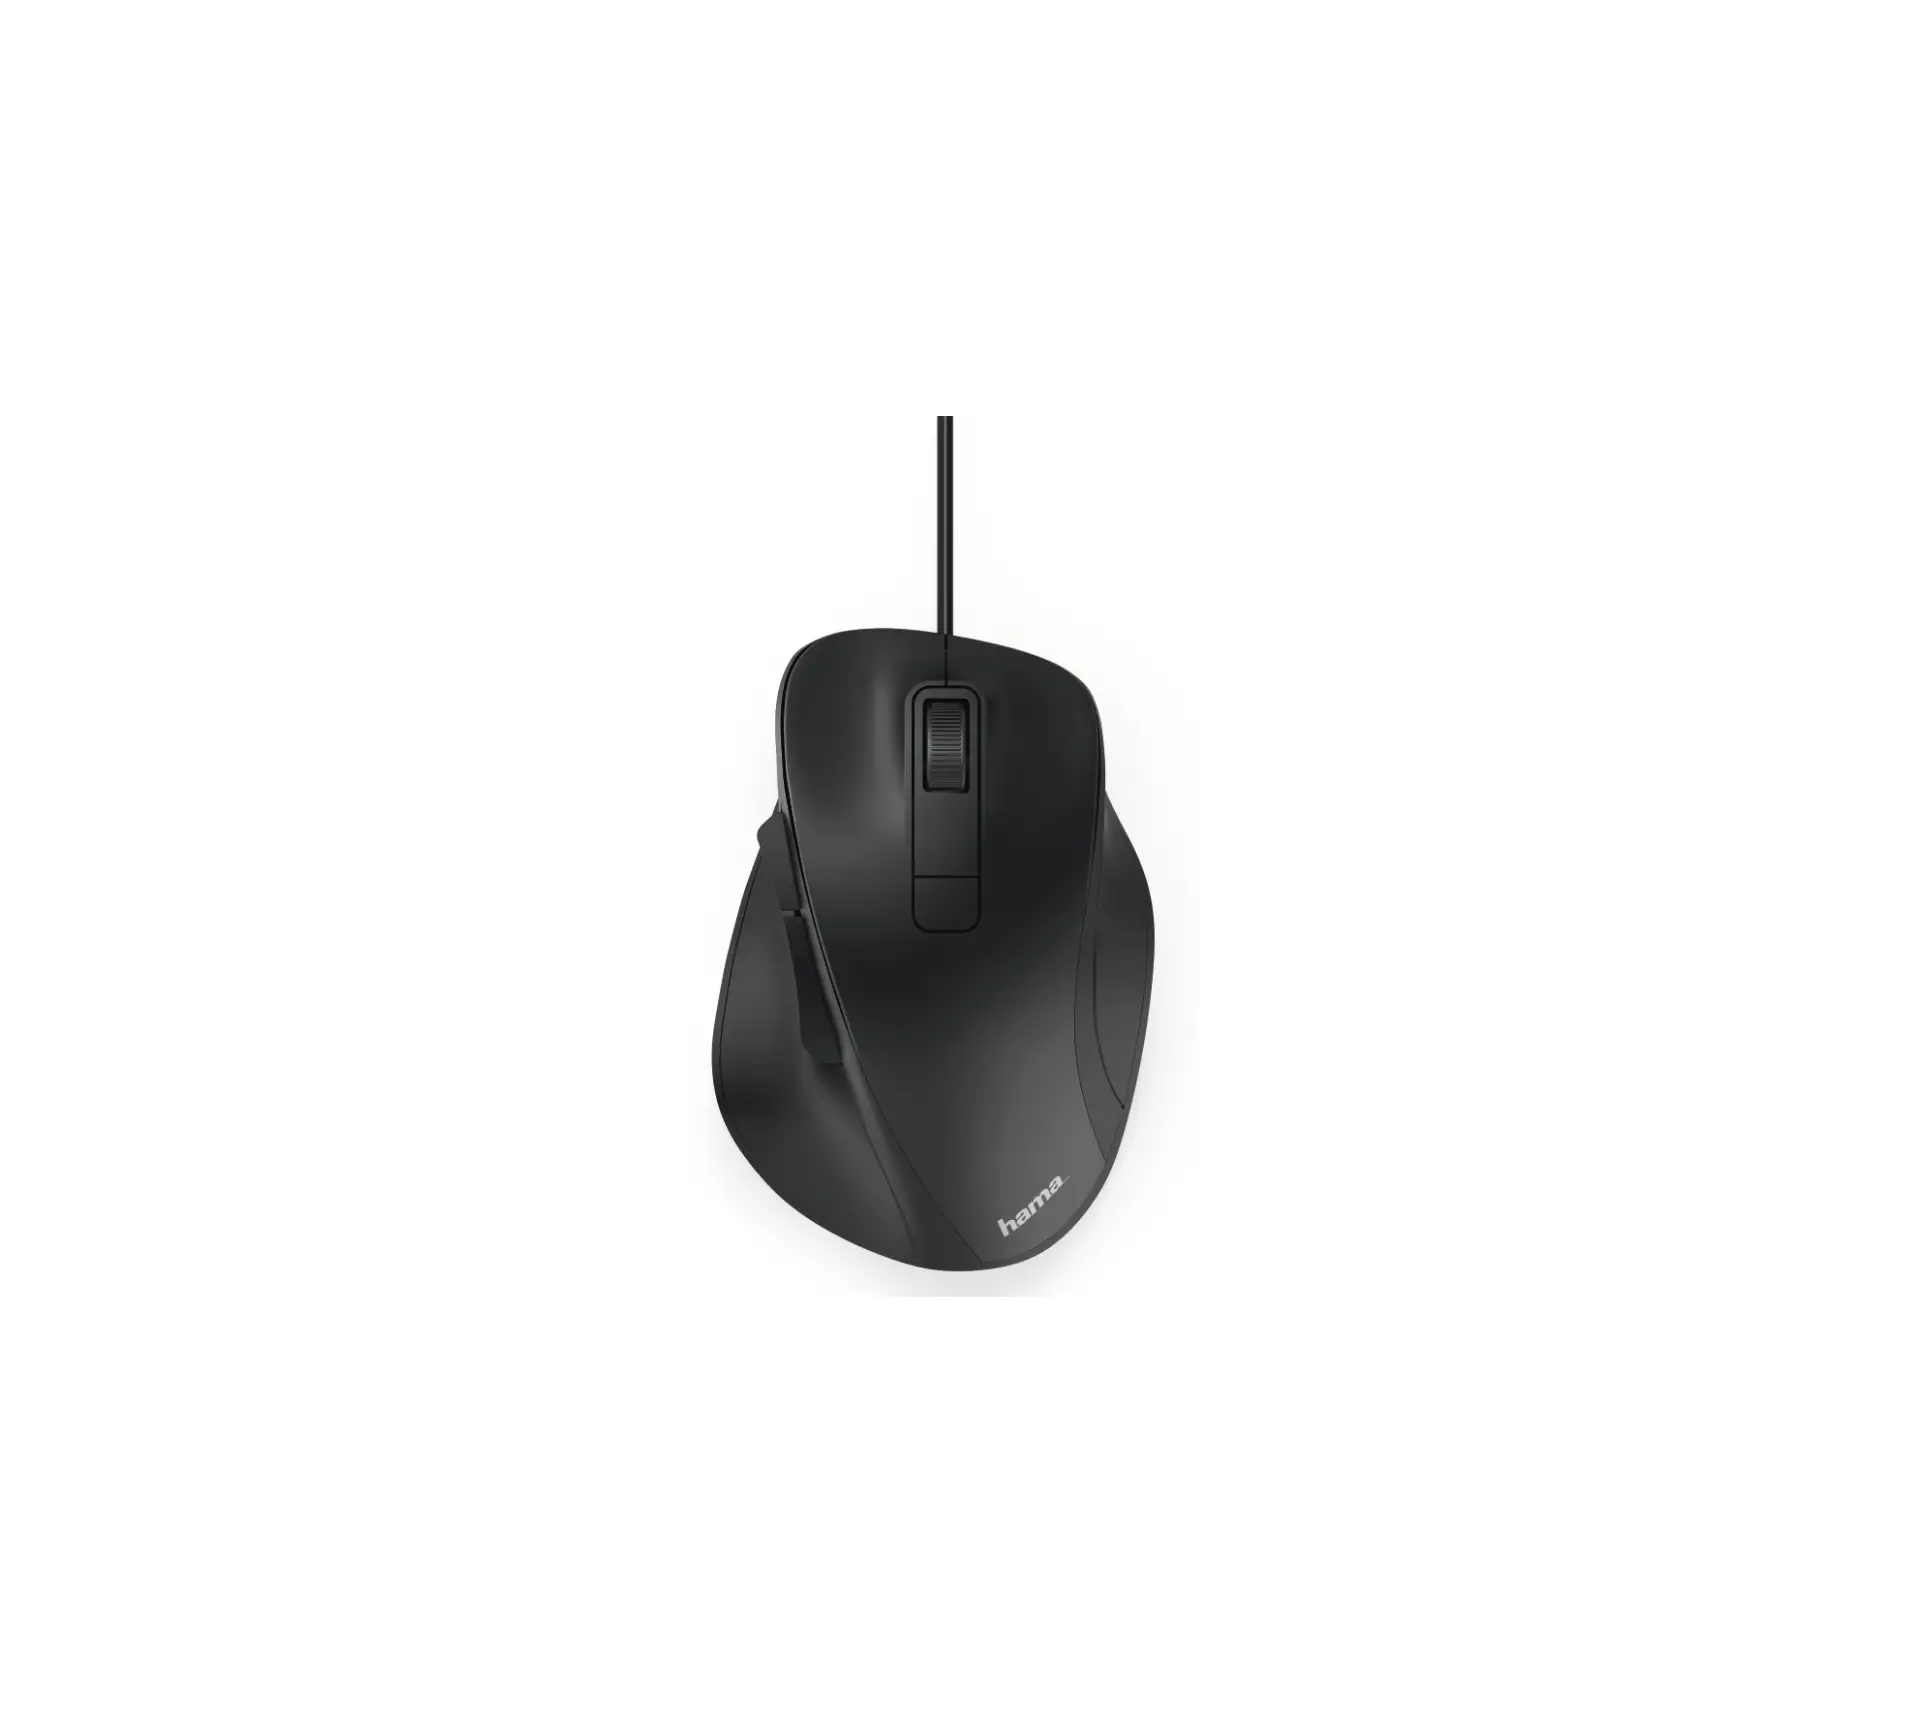 xx182612 6-Button Mouse MC-500